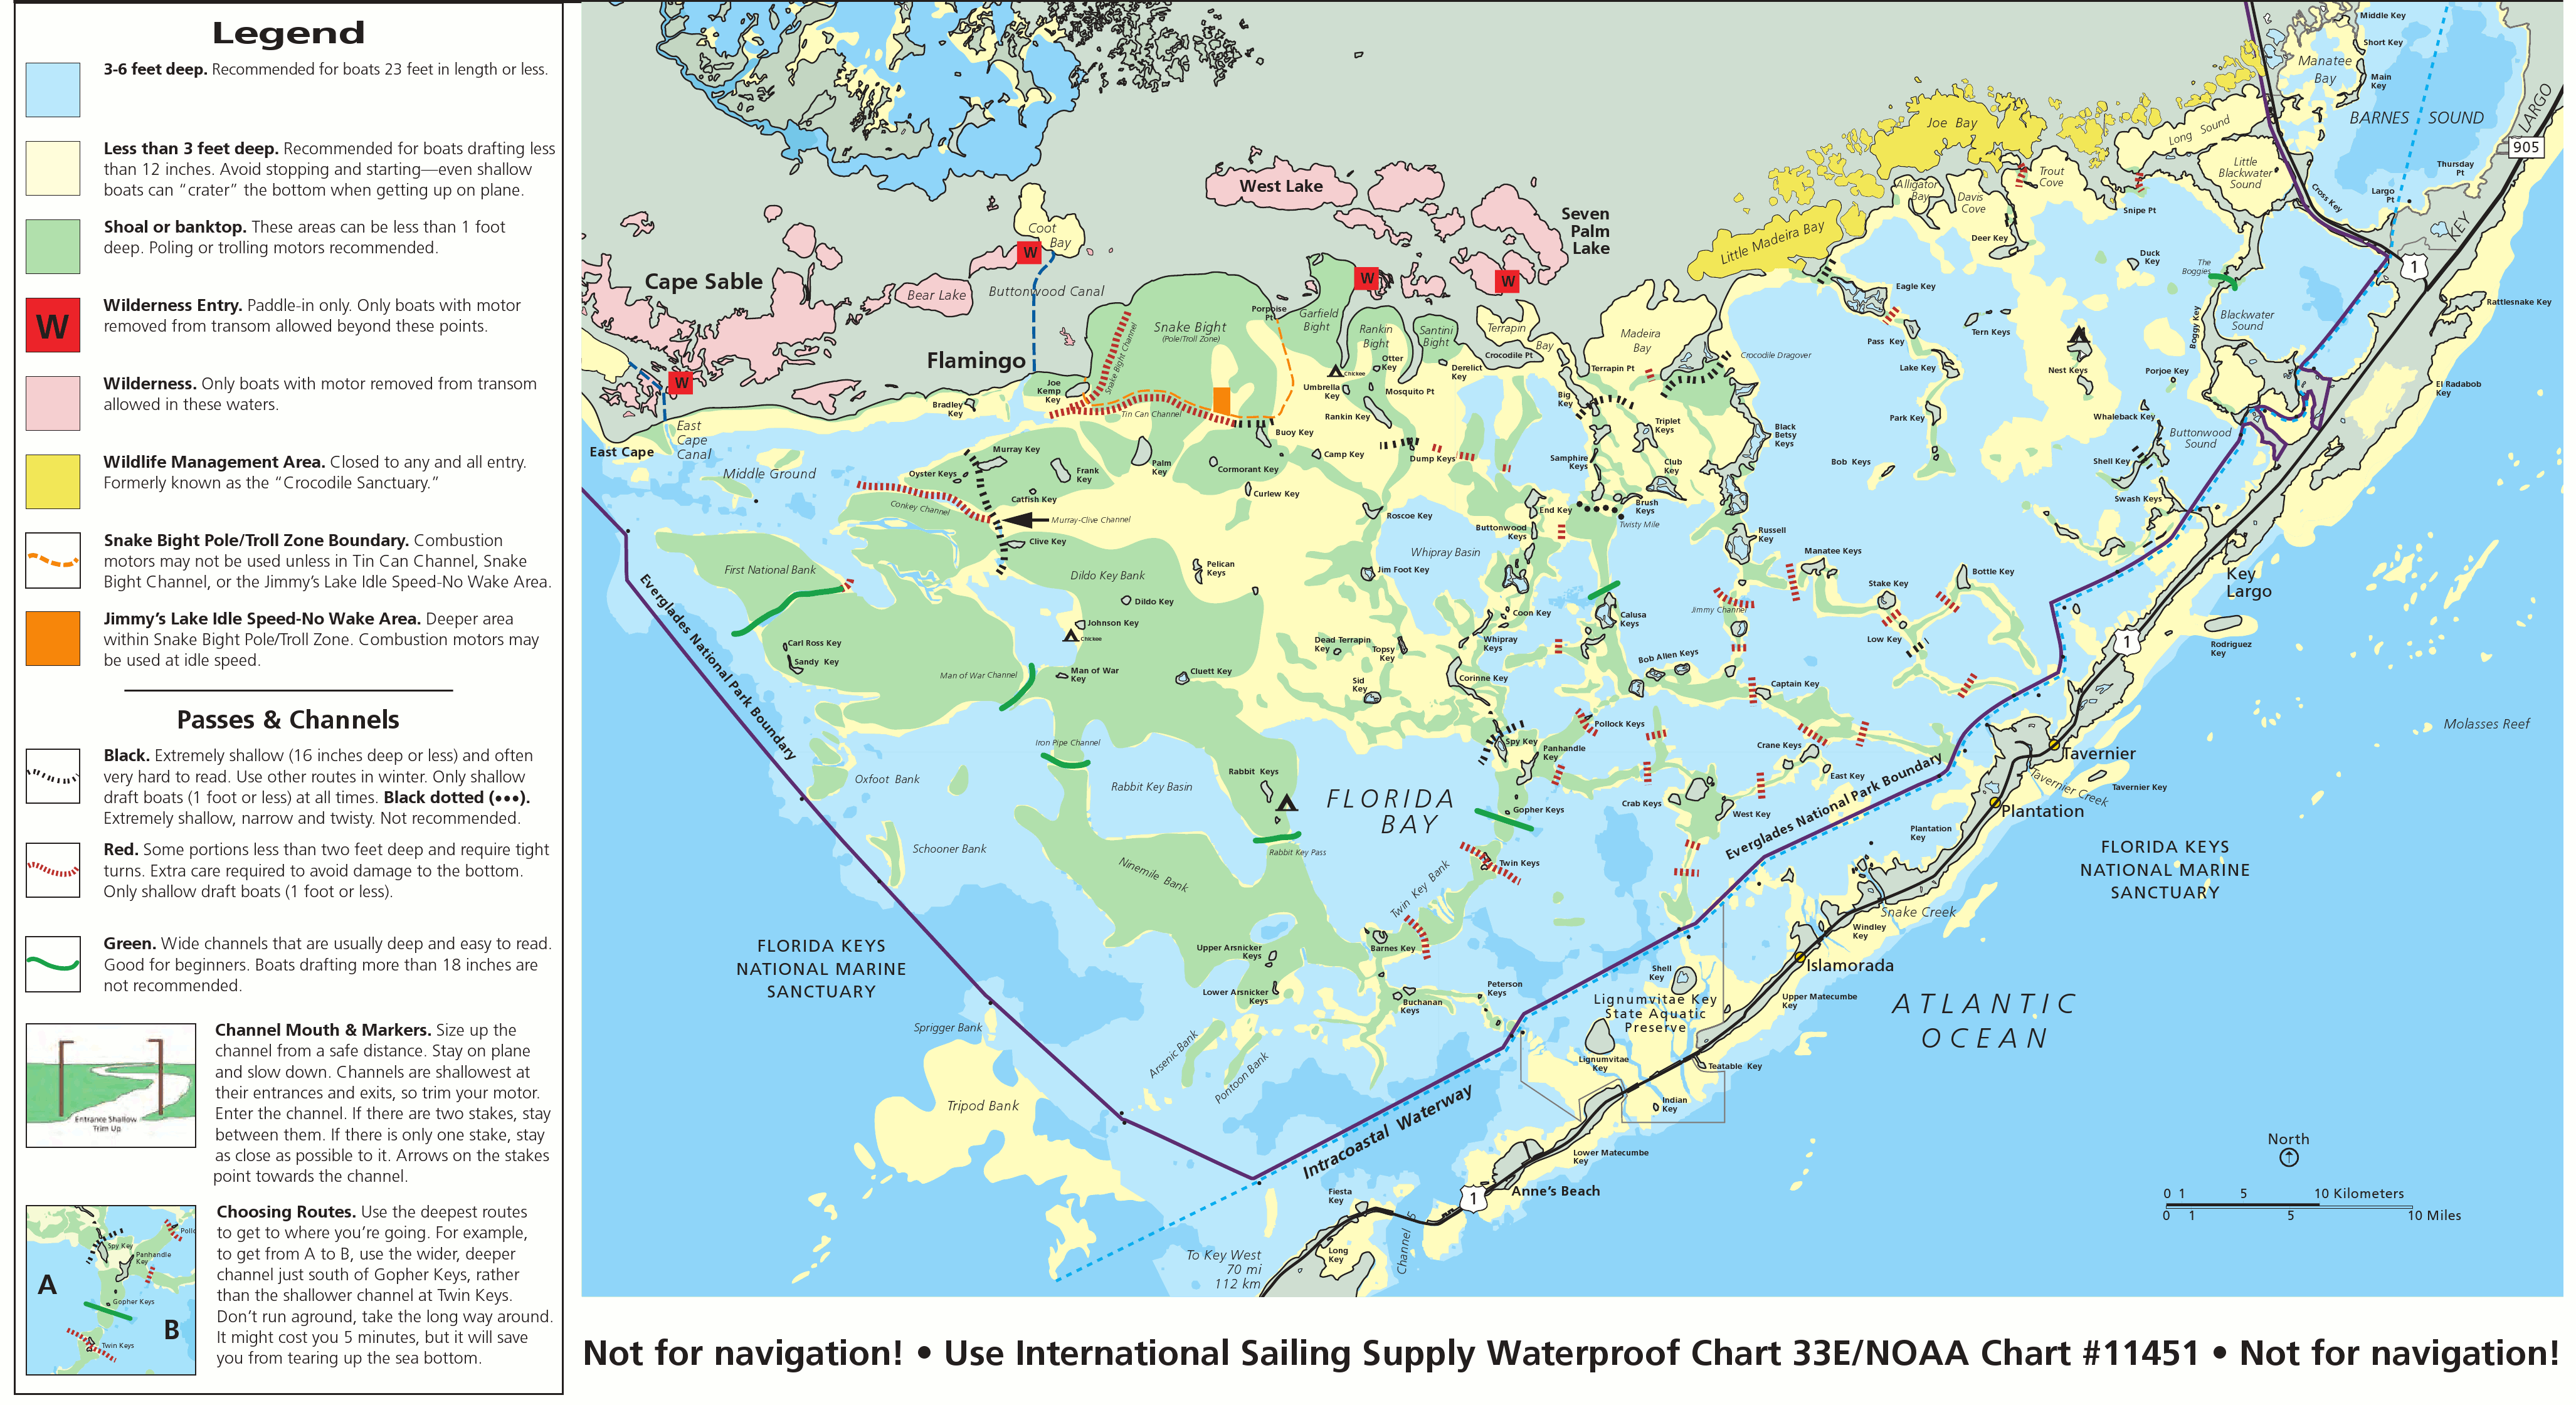 Everglades Maps | NPMaps.com - just free maps, period.